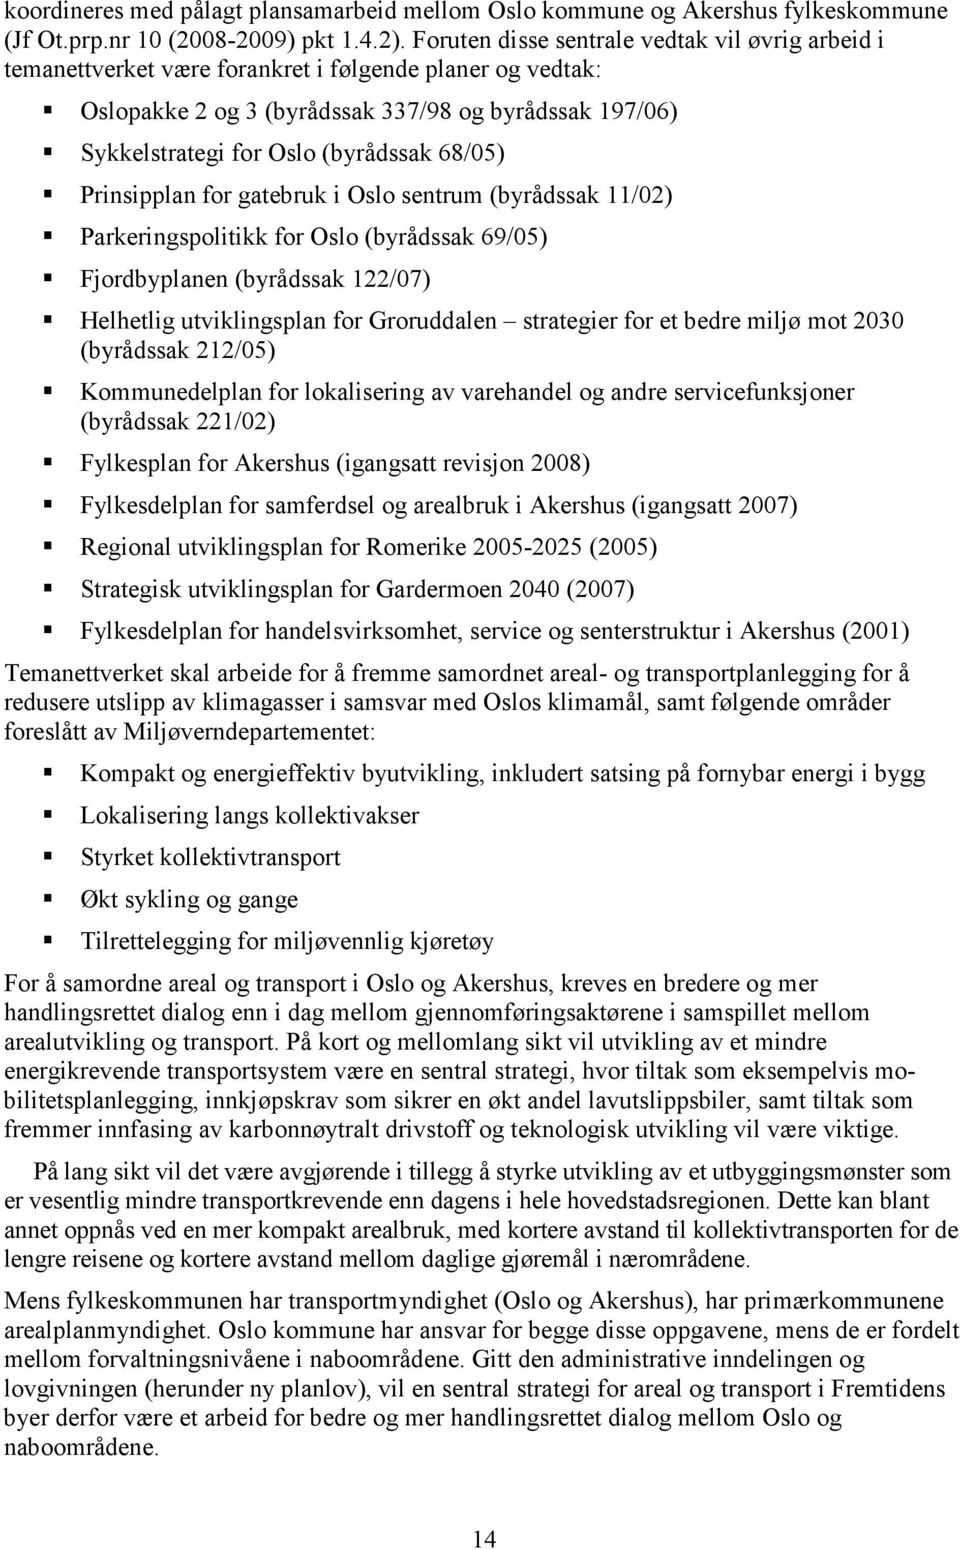 68/05) Prinsipplan for gatebruk i Oslo sentrum (byrådssak 11/02) Parkeringspolitikk for Oslo (byrådssak 69/05) Fjordbyplanen (byrådssak 122/07) Helhetlig utviklingsplan for Groruddalen strategier for